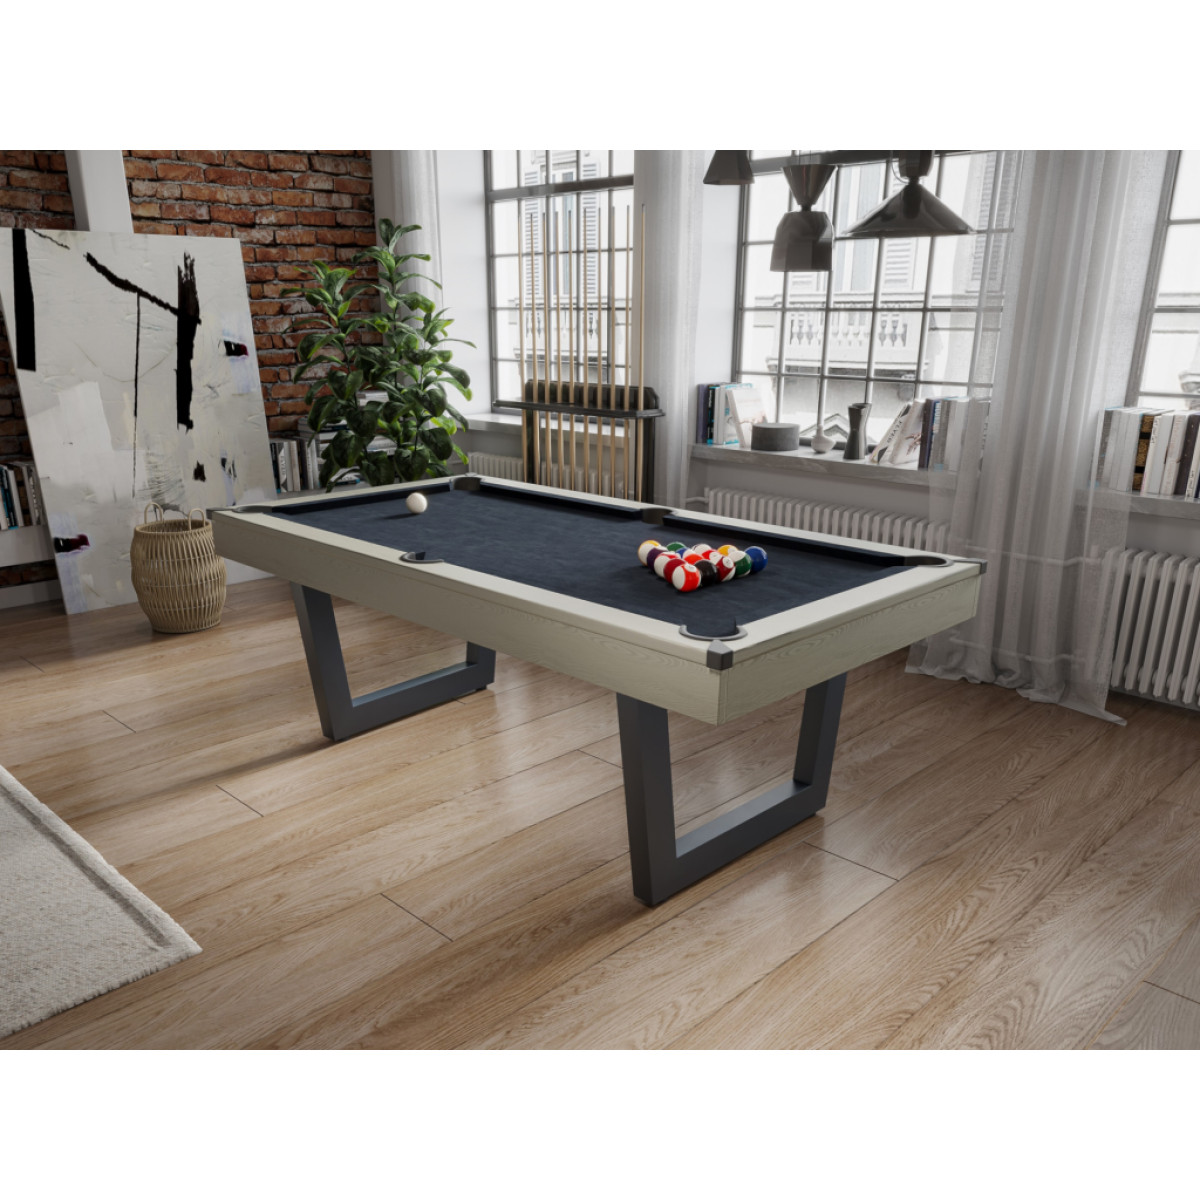 Tables de billard Vente-Unique Table transformable - Billard & Ping-pong - Coloris naturel clair et noir - L213,4 x P111,8 x H78,5 cm - MELIAN